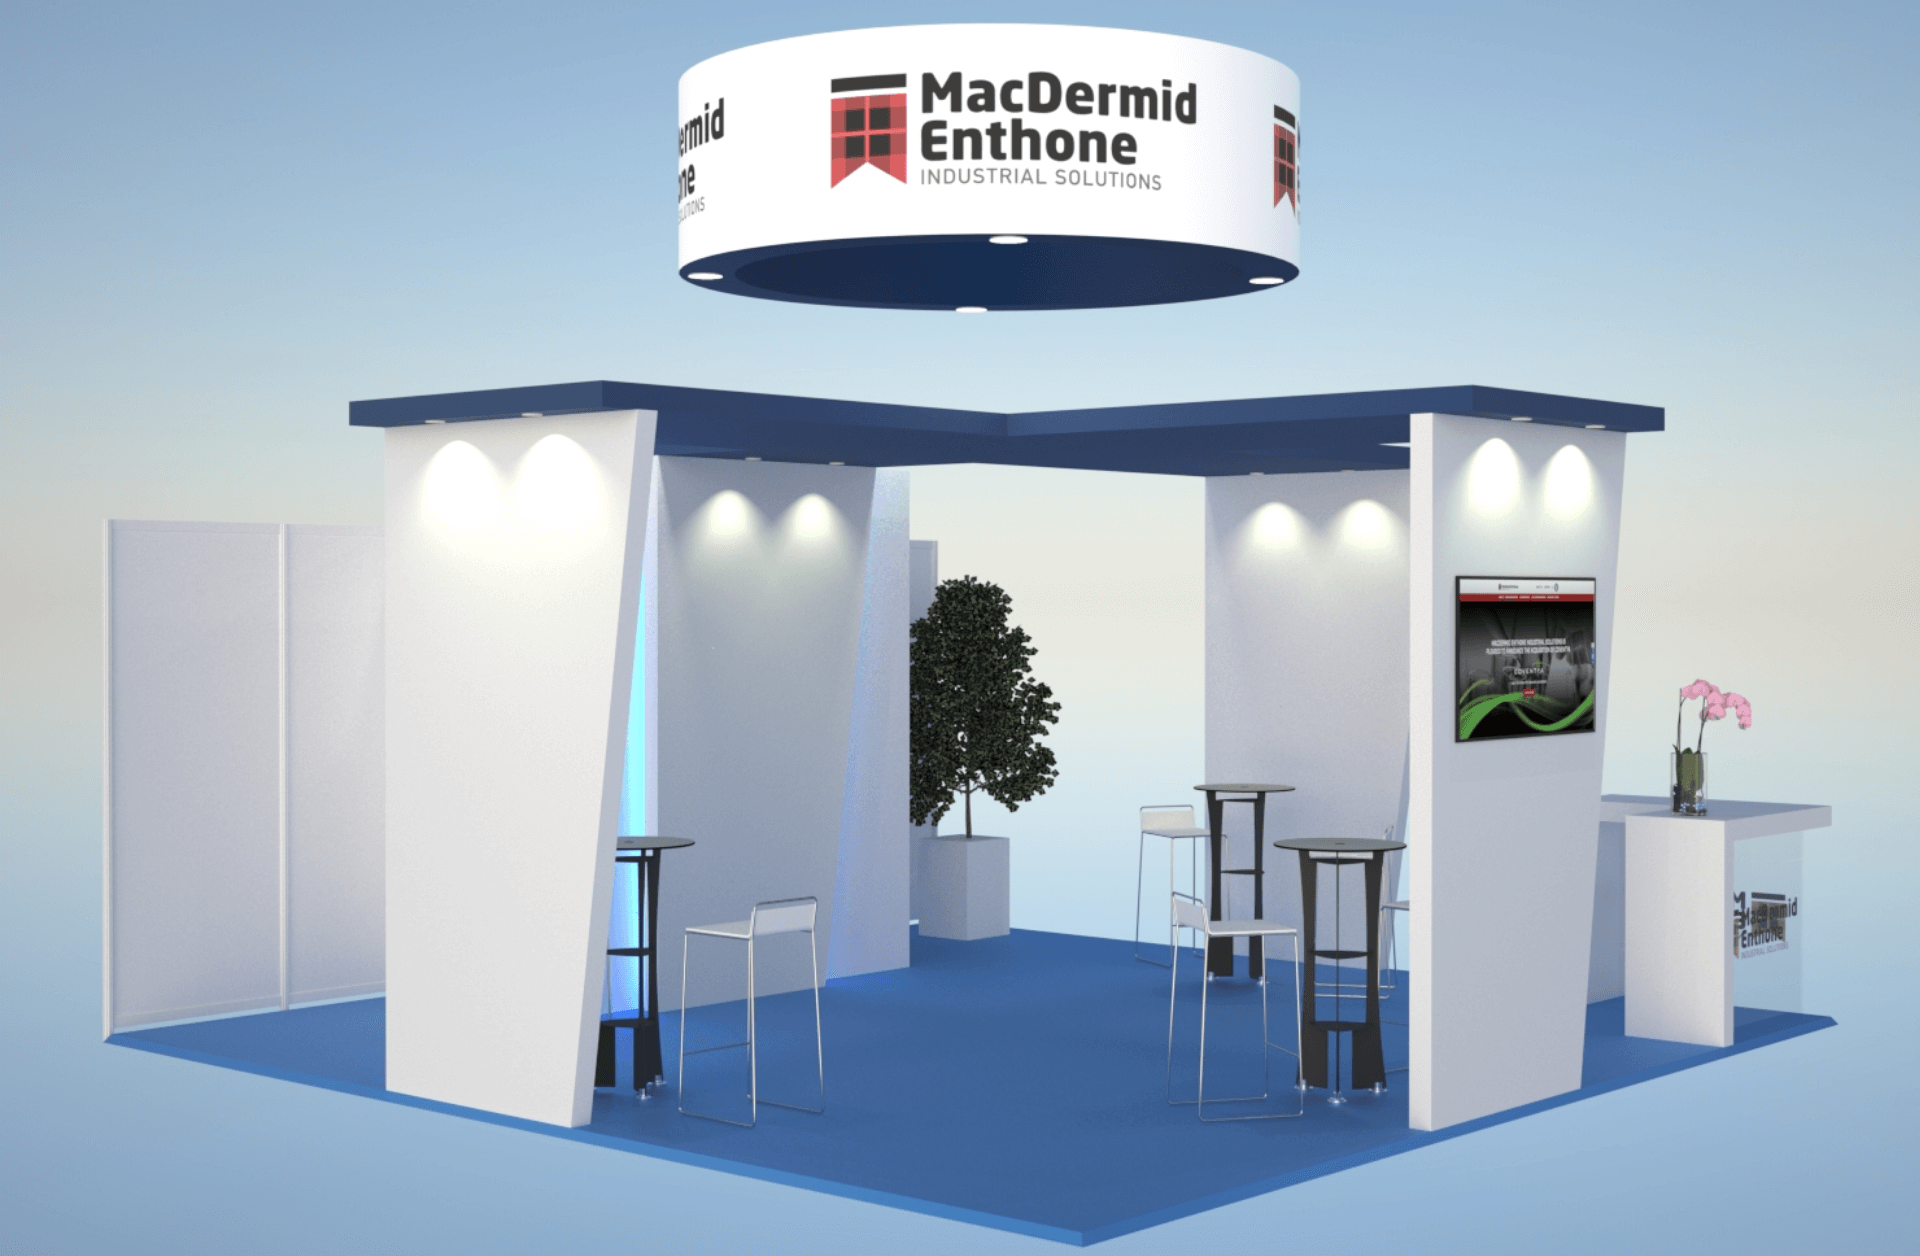 image-evenementiel-3D-stand-avant-vide-MacDermid-Enthone-agence-conseil-en-communication-Letb-synergie